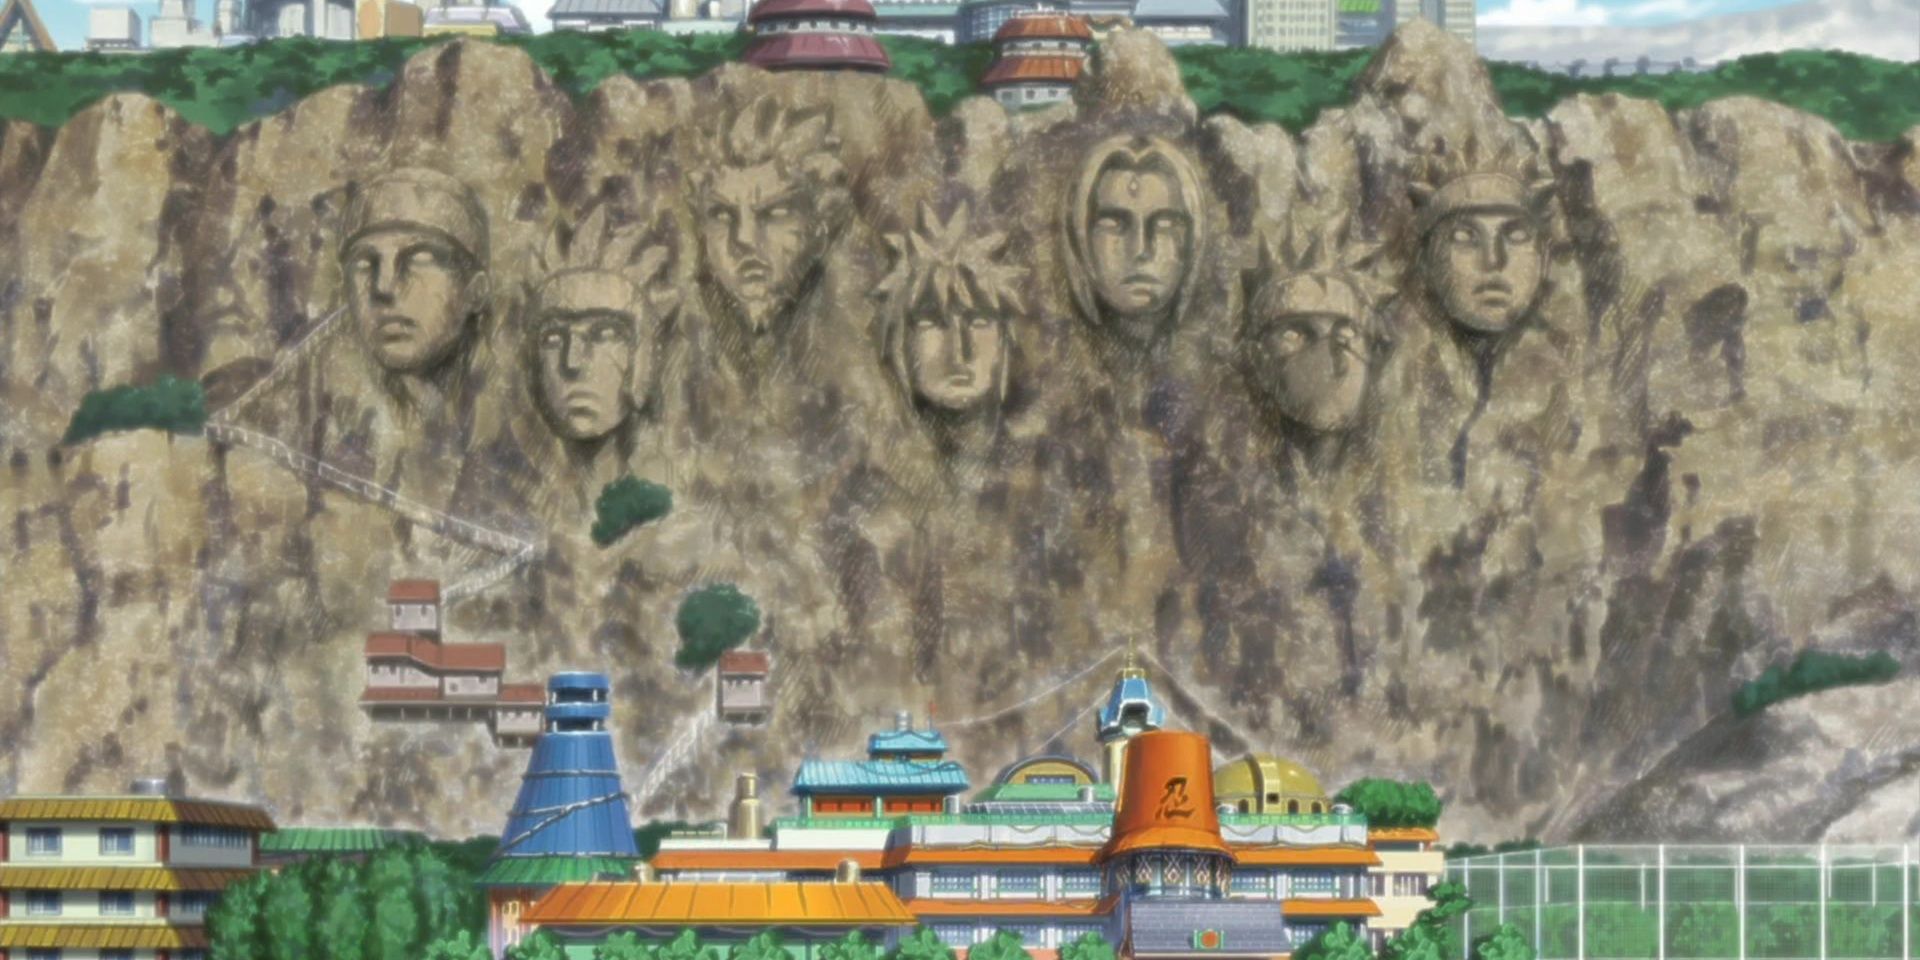 The Hokage Rock from Naruto